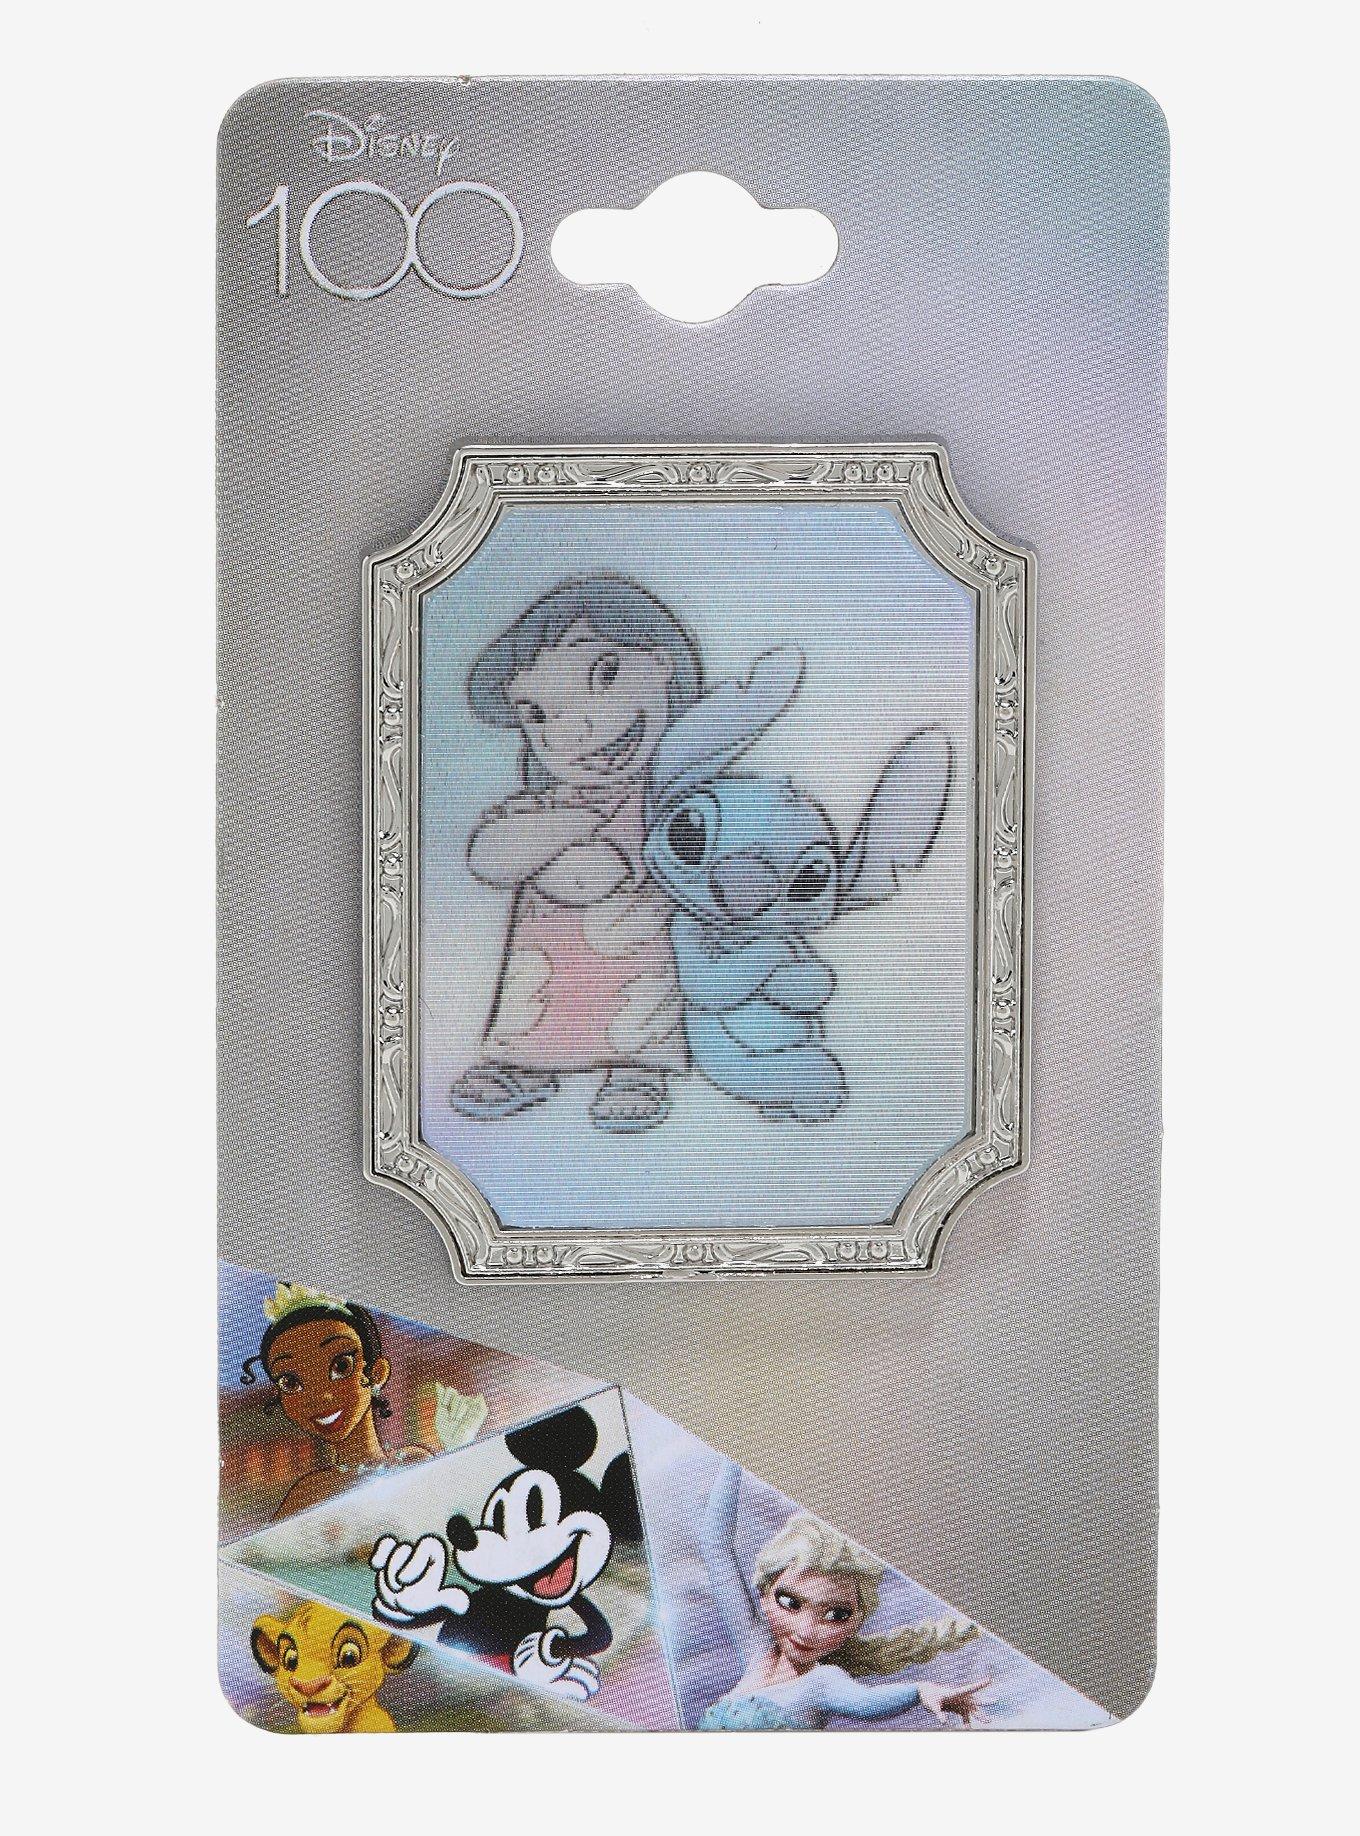 Beast Kingdom Stitch with Frog Disney100 Limited Edition Figurine, Lilo &  Stitch